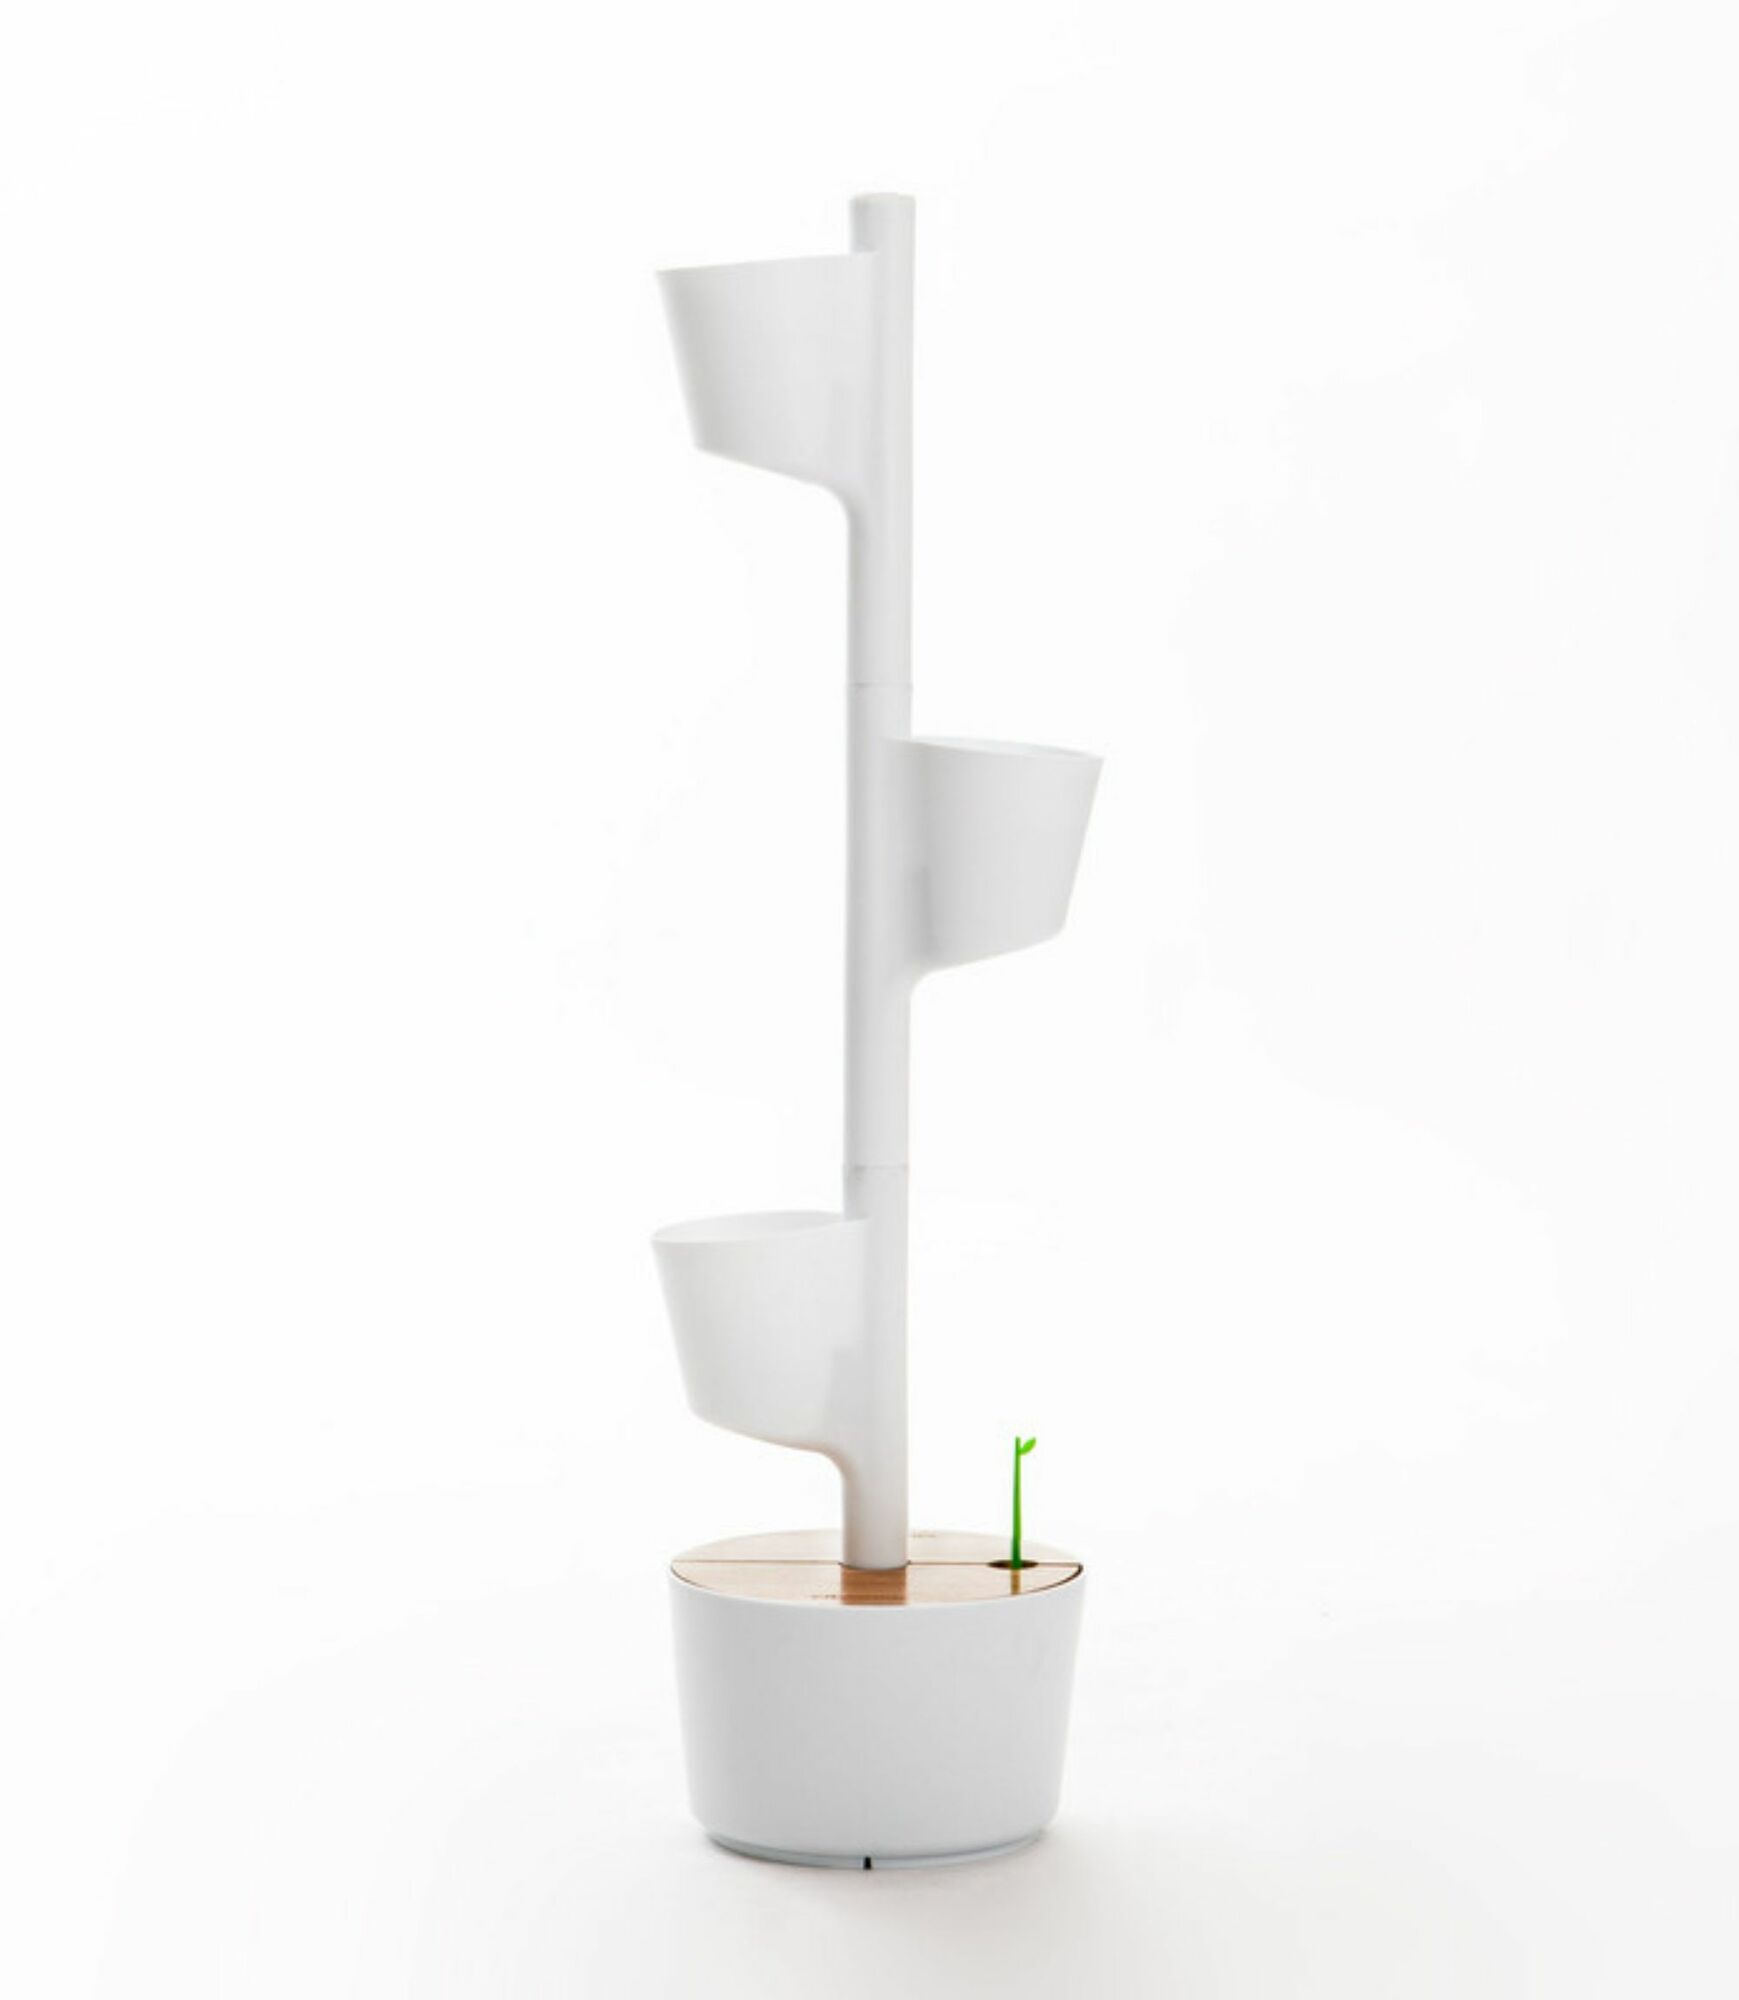 Design Award: Pflanzensystem Kiefernholz Weiß 1